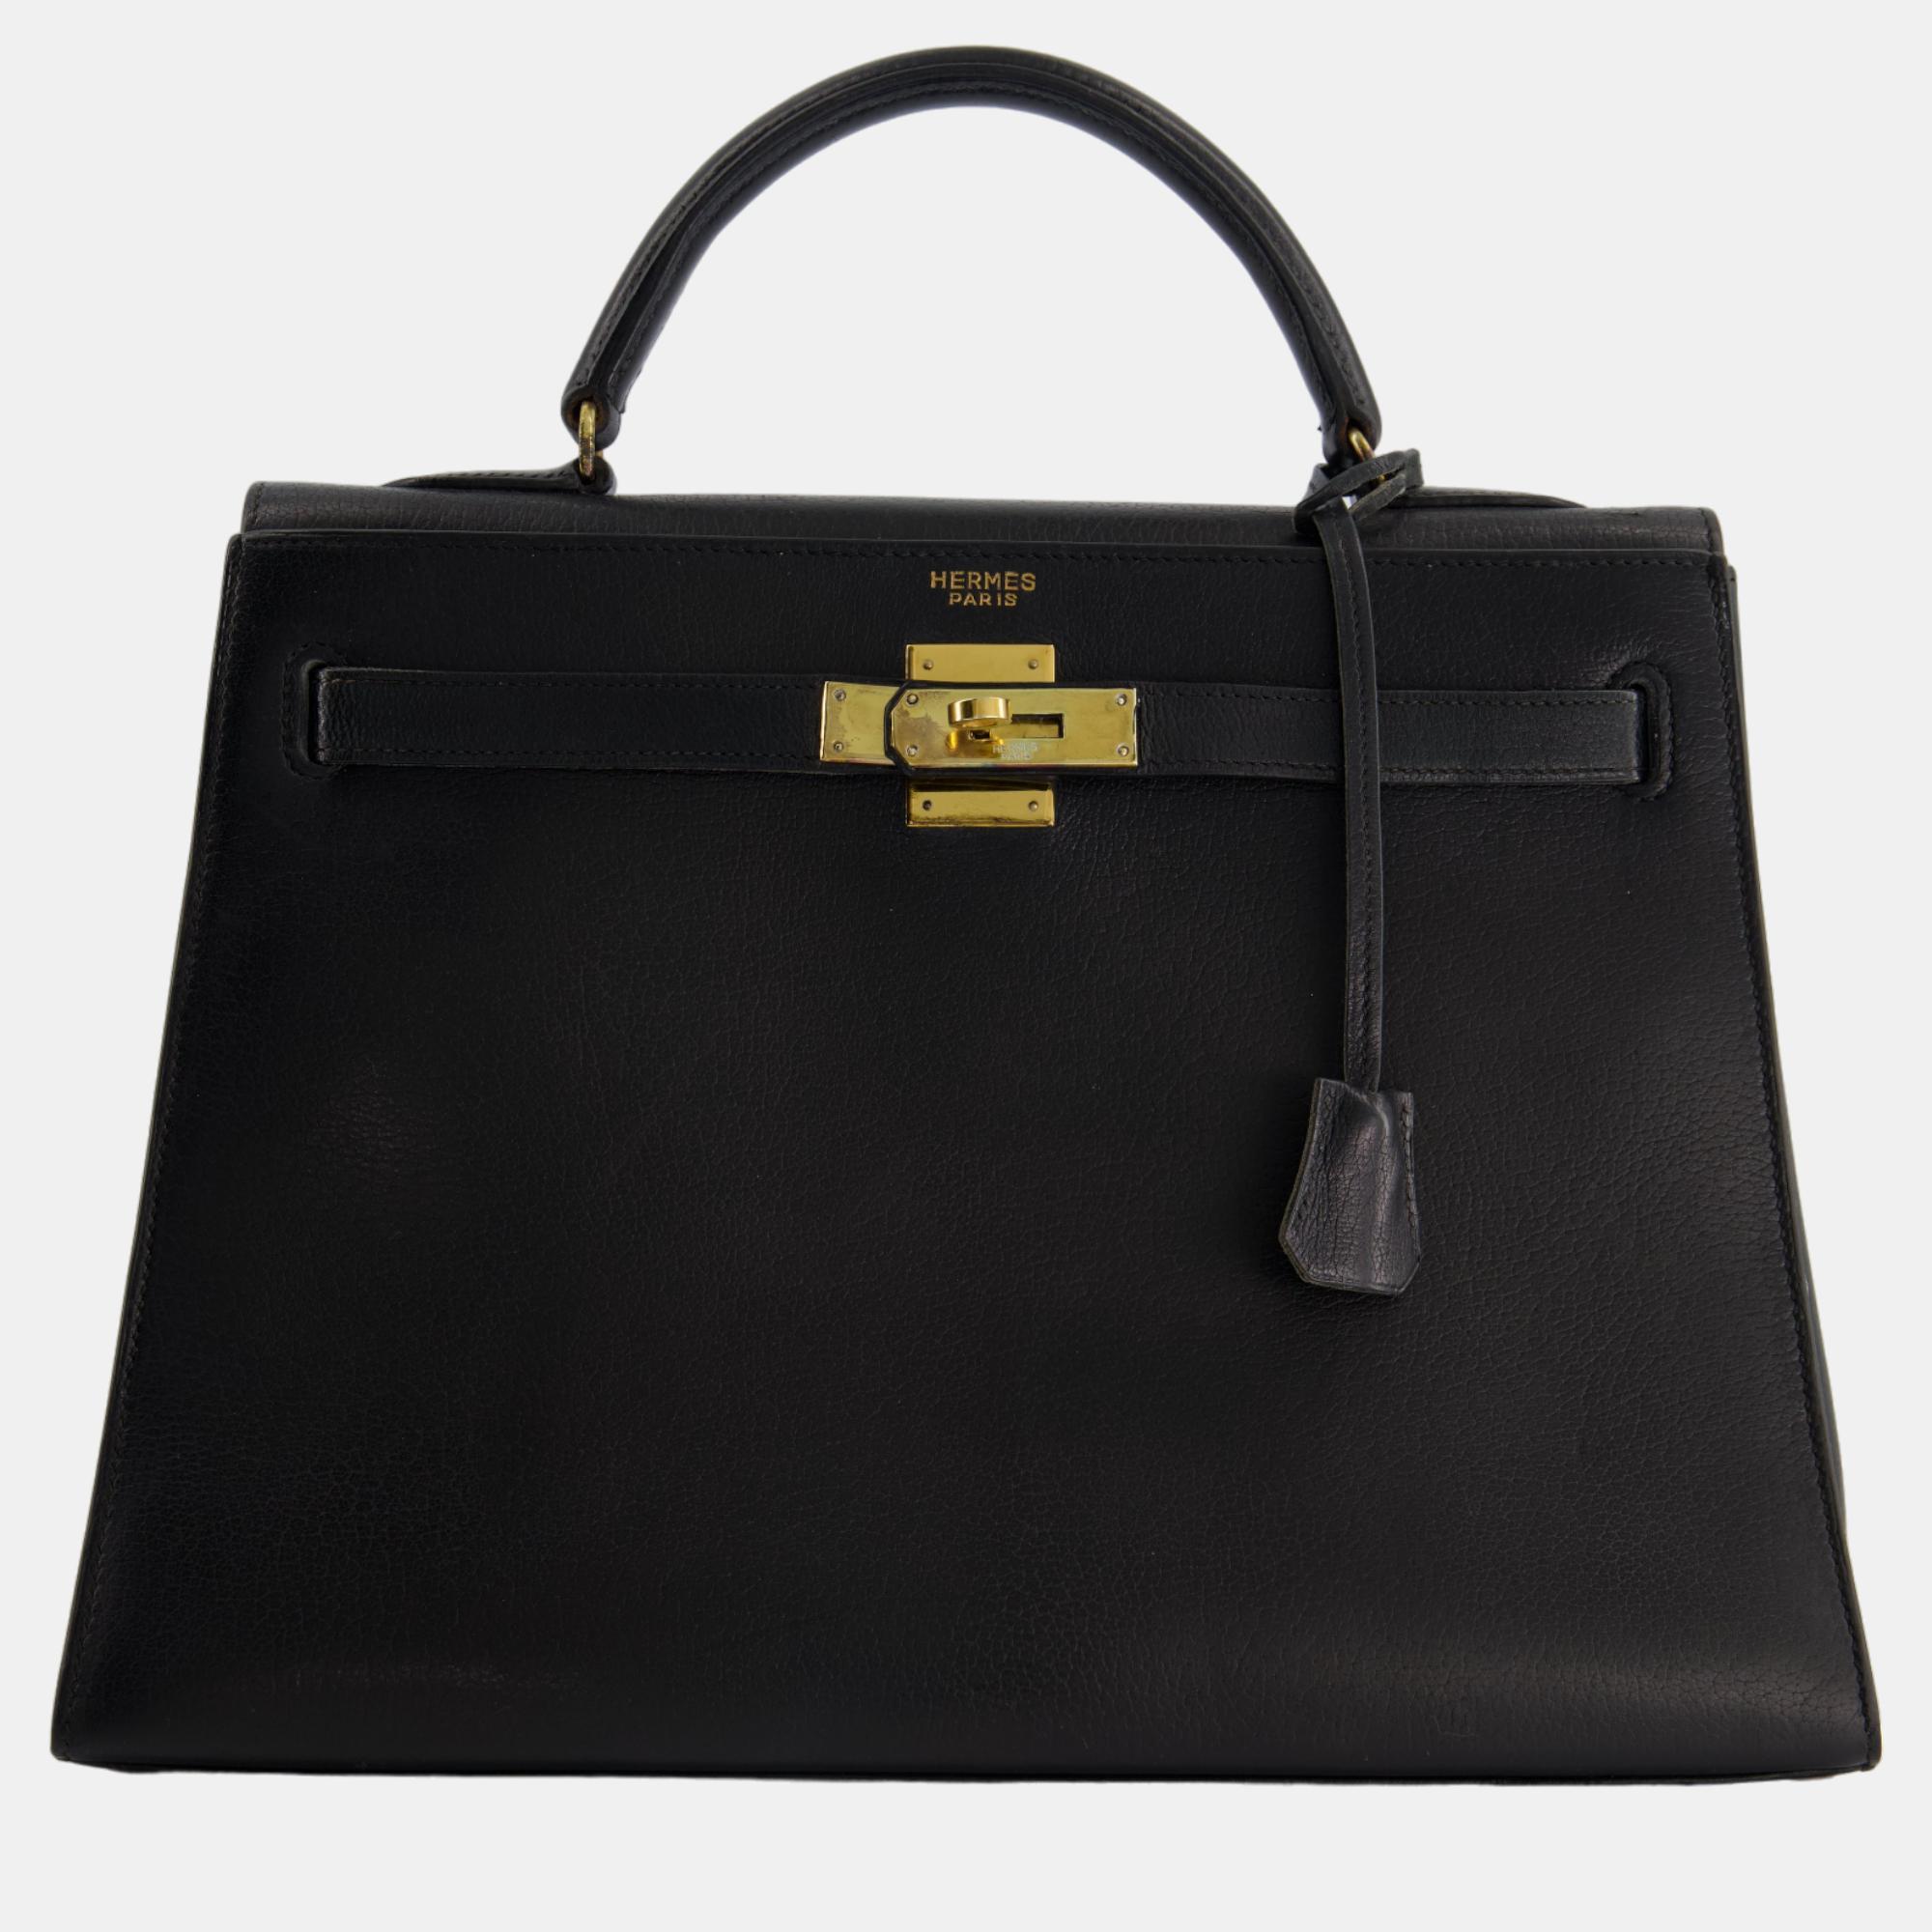 Hermes vintage kelly 32cm bag in black natural peau porc leather with gold hardware